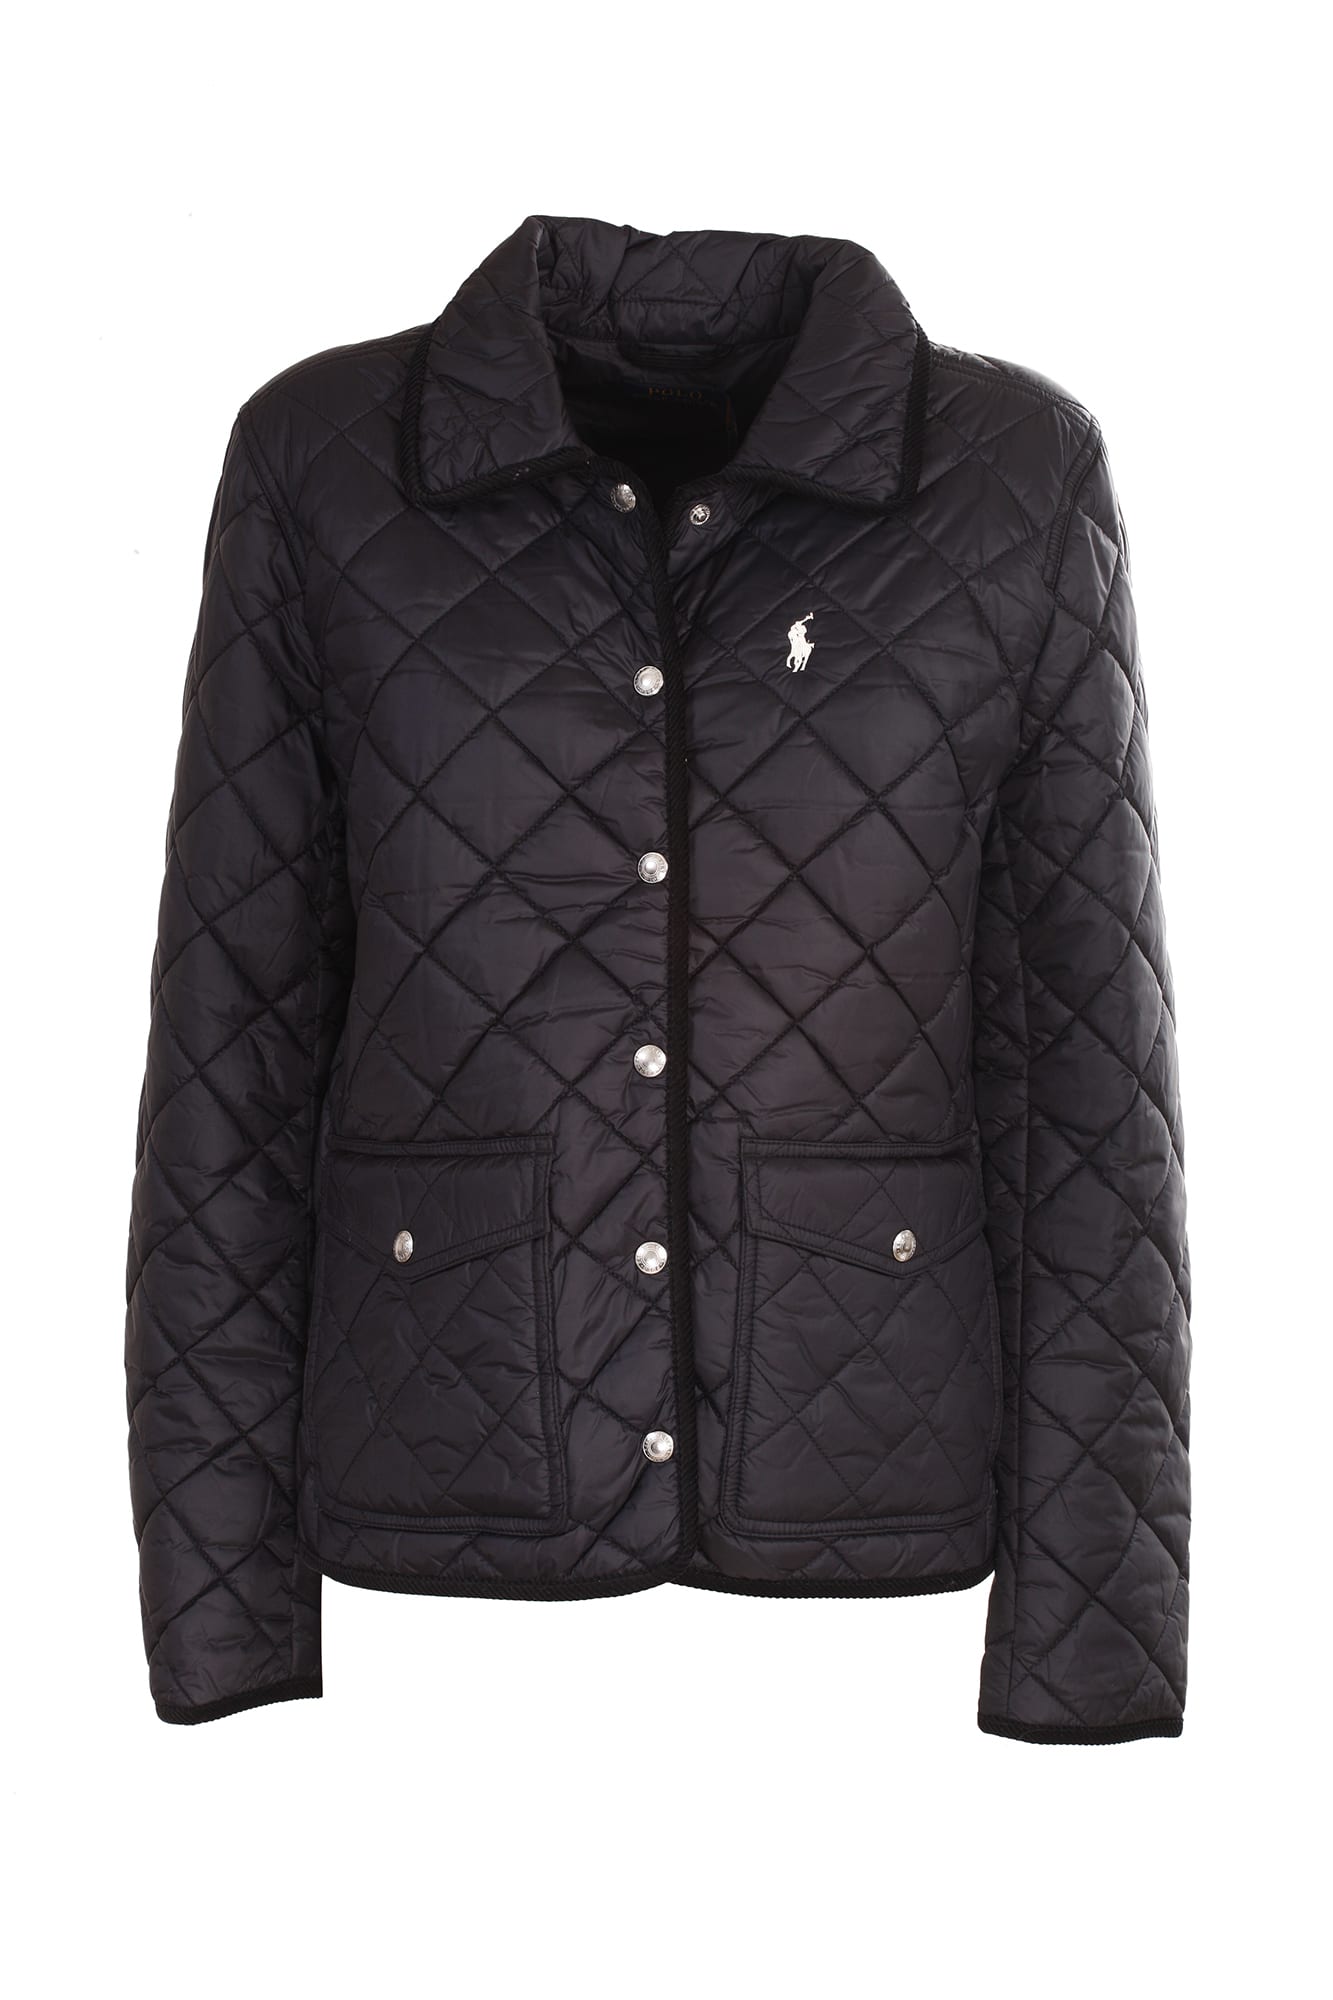 Ralph Lauren black quilted jacket